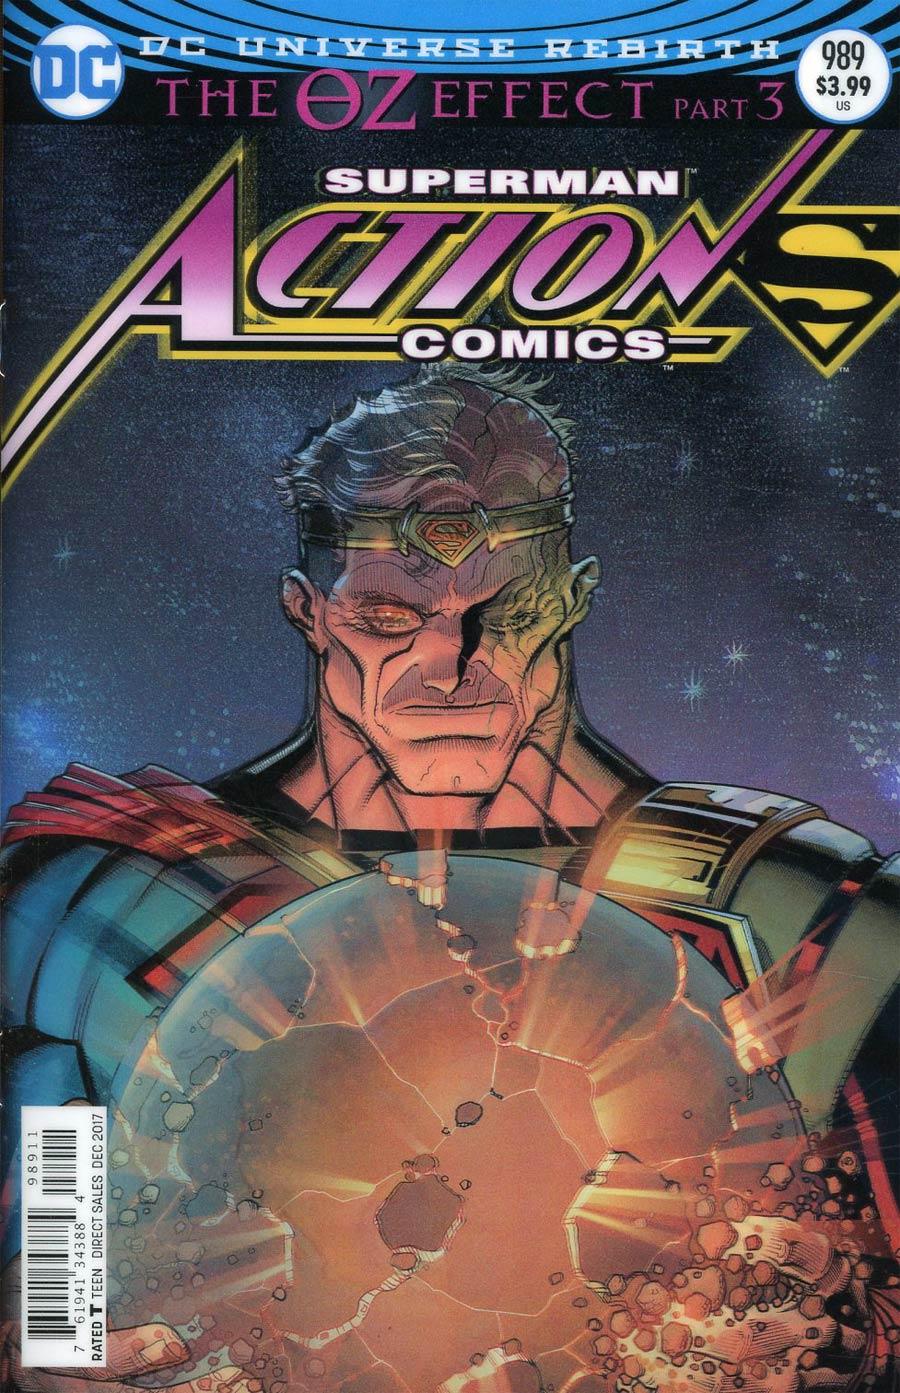 Action Comics Vol. 2 #989